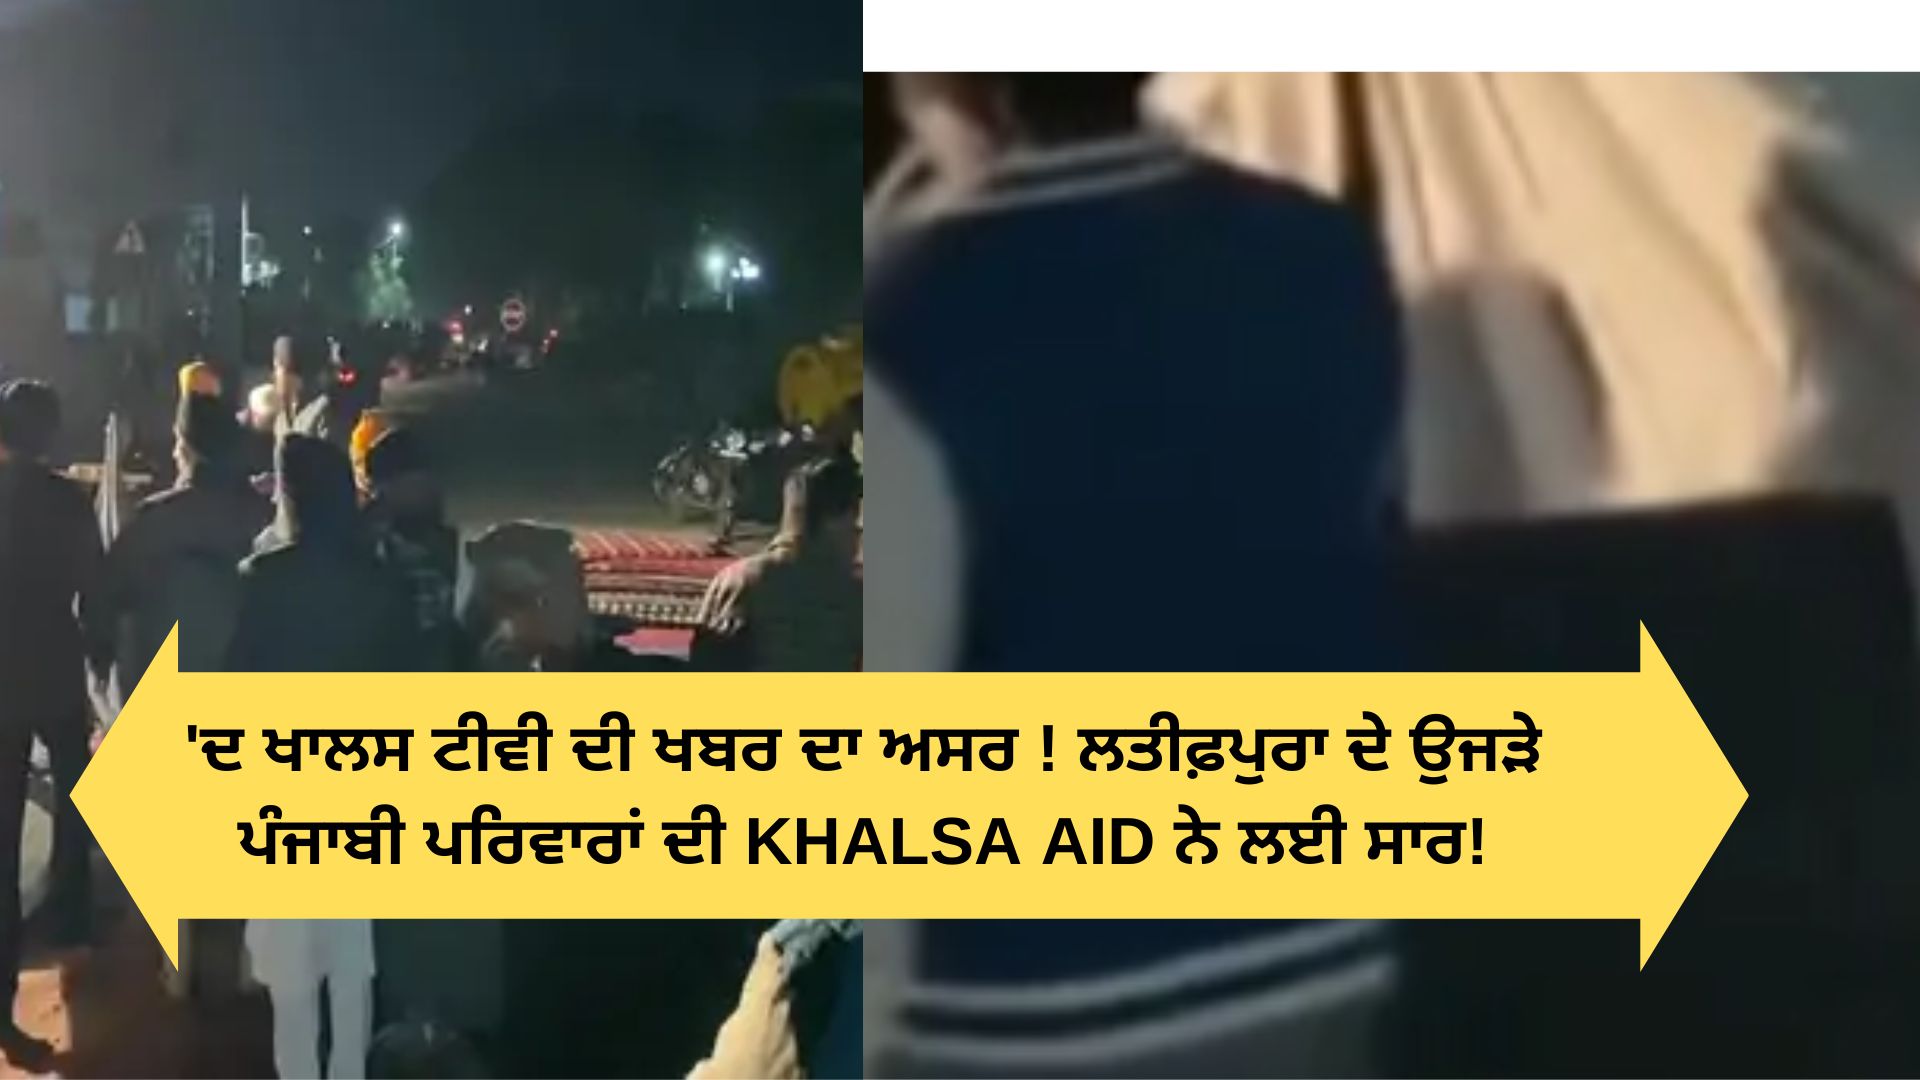 Khalsa aid reached latifpura jalandhar help people